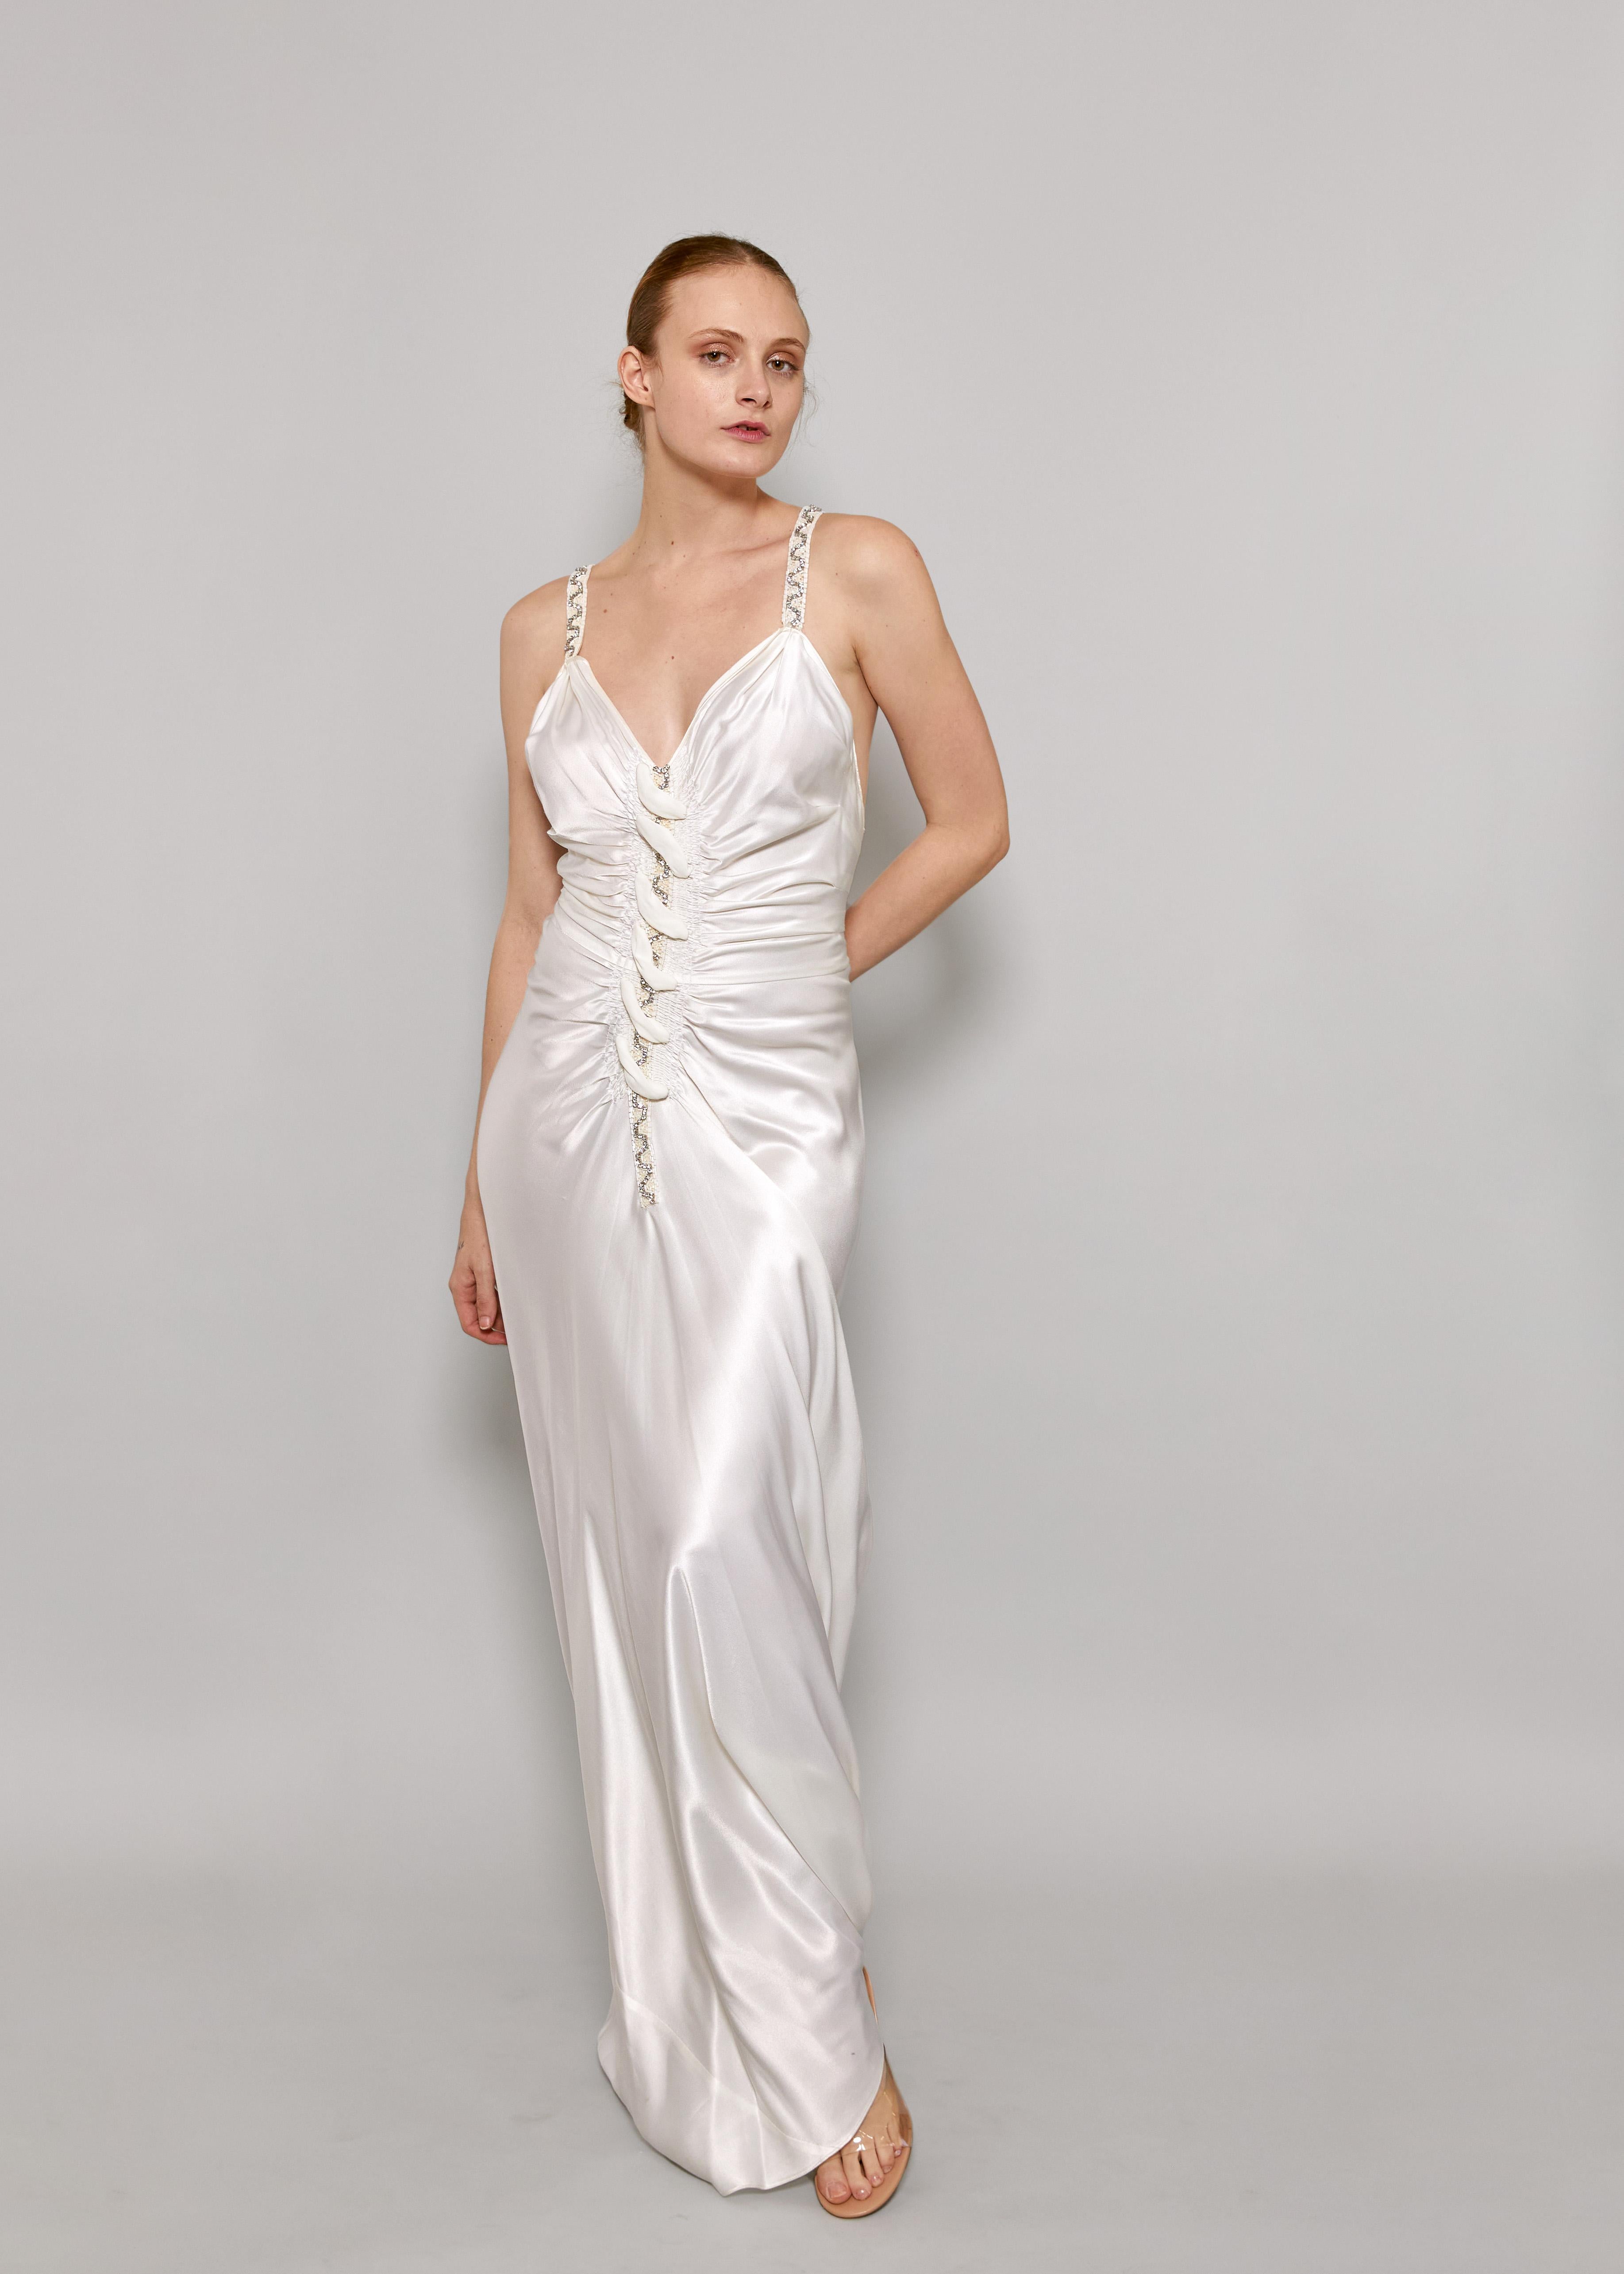 Soyez au centre de l'attention dans l'exquise robe coupée en biais en satin blanc de John Galliano S/S 2006. D'élégantes bretelles ornées de strass et de perles ajoutent une touche de glamour à l'élégant modèle ruché sur le devant. Confectionnée